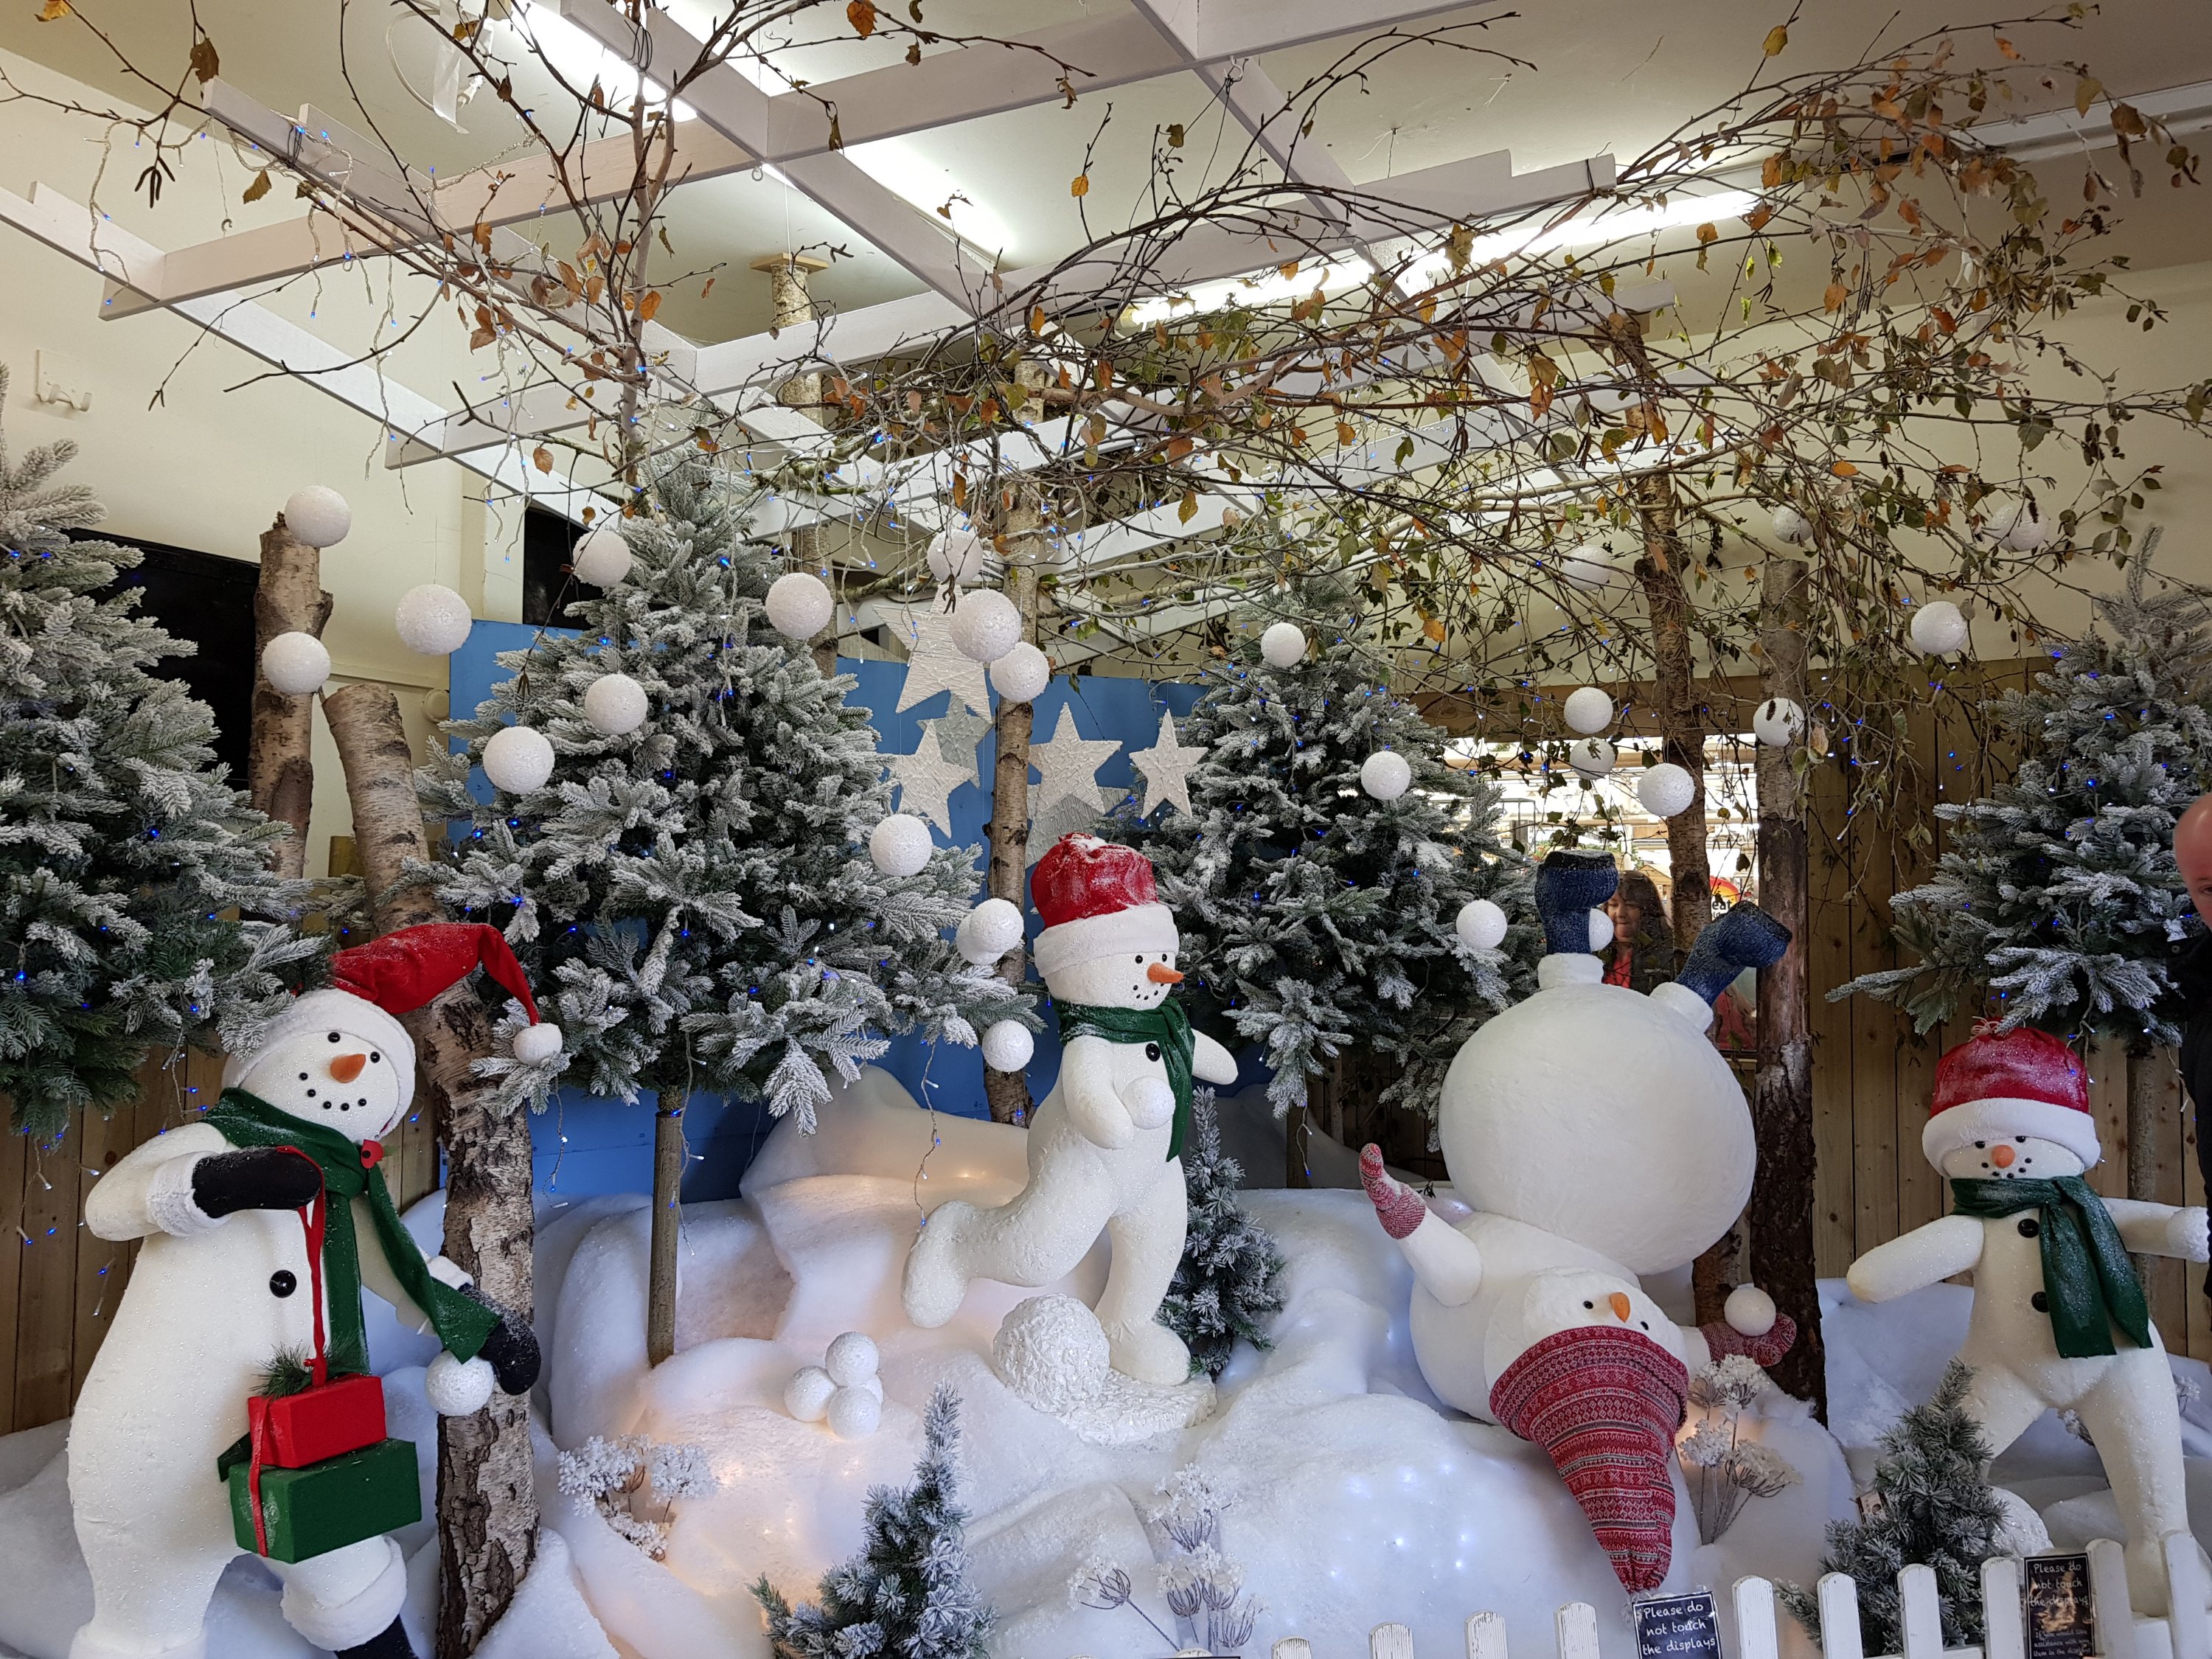 Snowman Christmas display at Van Hage, Great Amwell